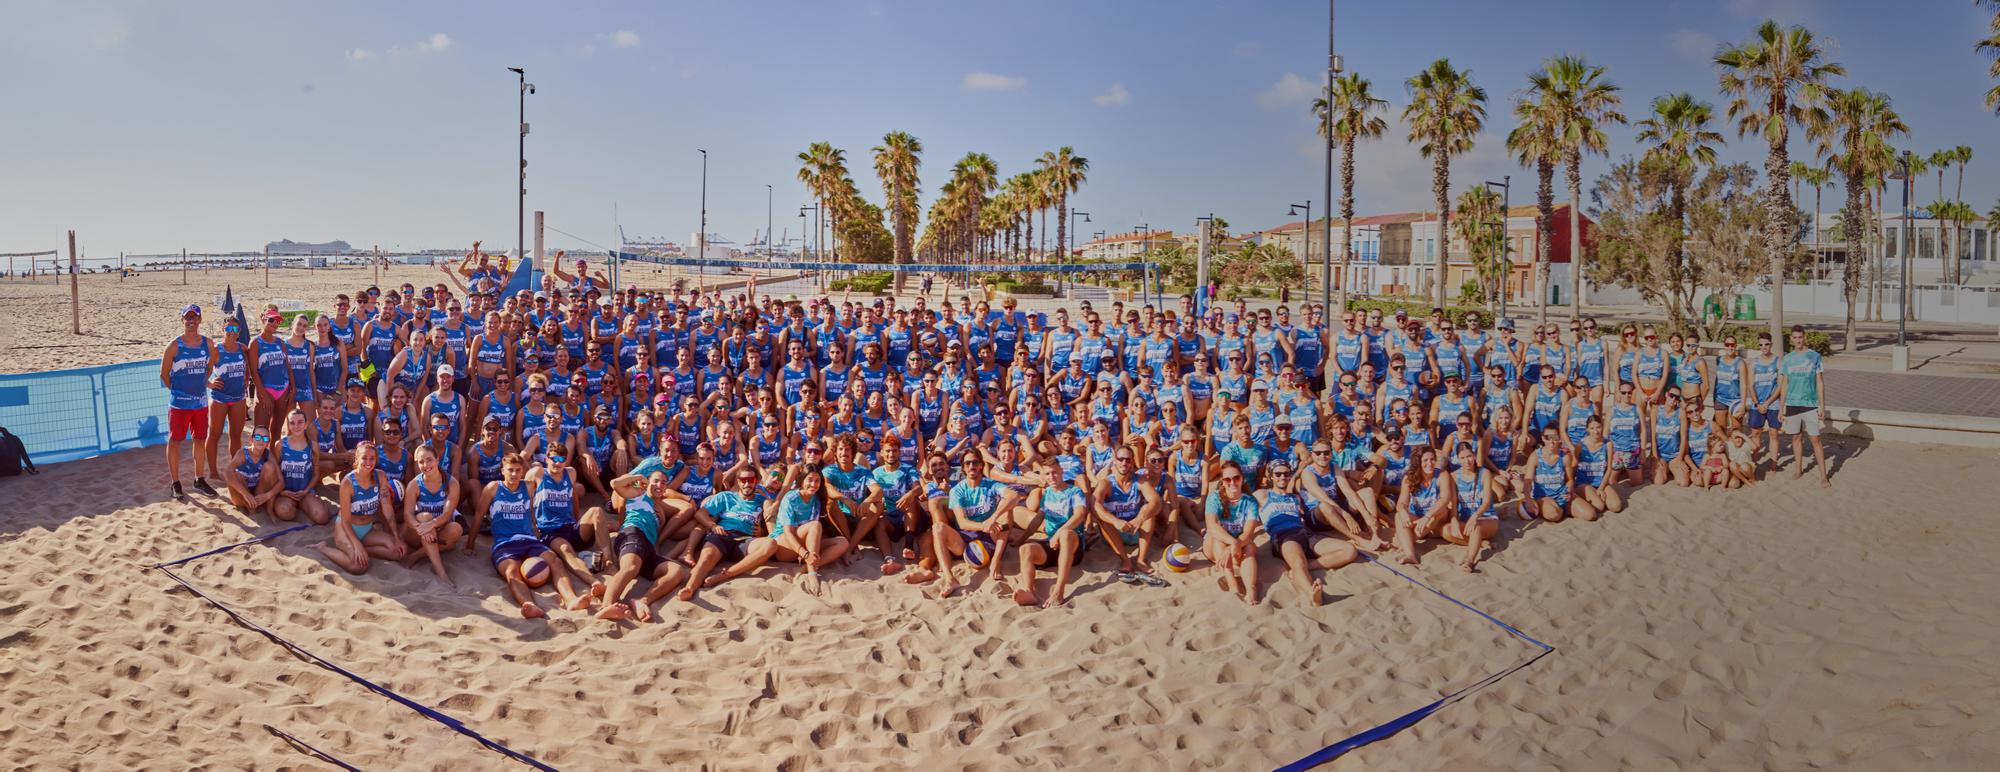 Otro verano más, la gran fiesta del vóley playa volvió ser protagonista en la arena valenciana en la que se congregaron 400 participantes.